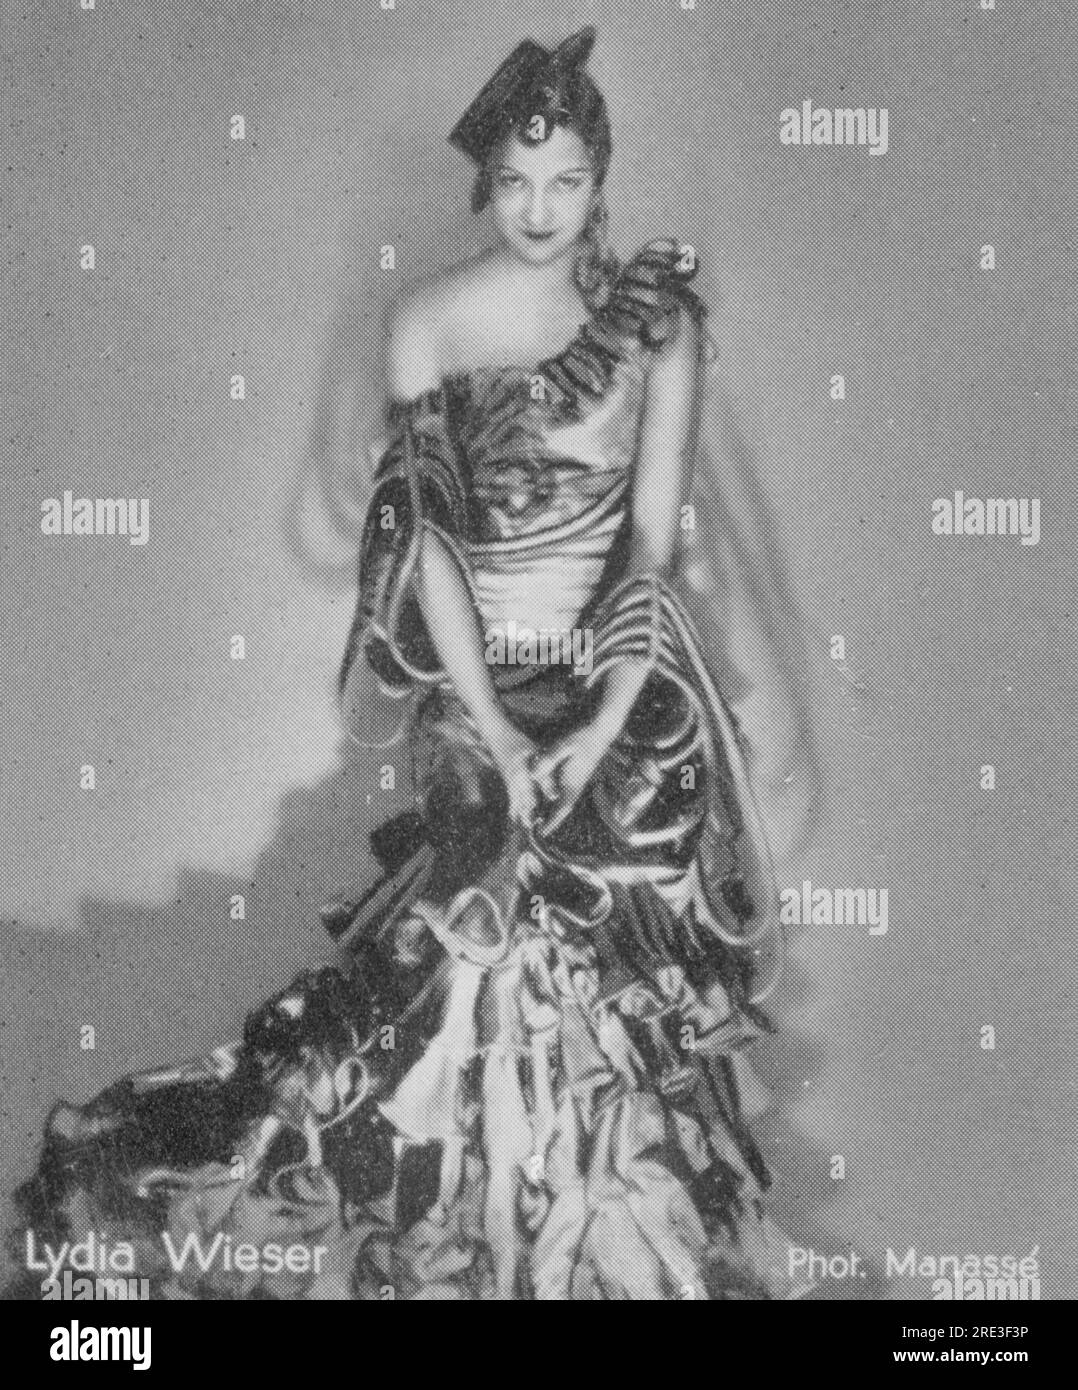 Wieser, Lydia, danseuse allemande, en costume, années 1920, Photographie : Manasse, carte cigarette, INFORMATIONS-AUTORISATION-DROITS-SUPPLÉMENTAIRES-NON-DISPONIBLES Banque D'Images